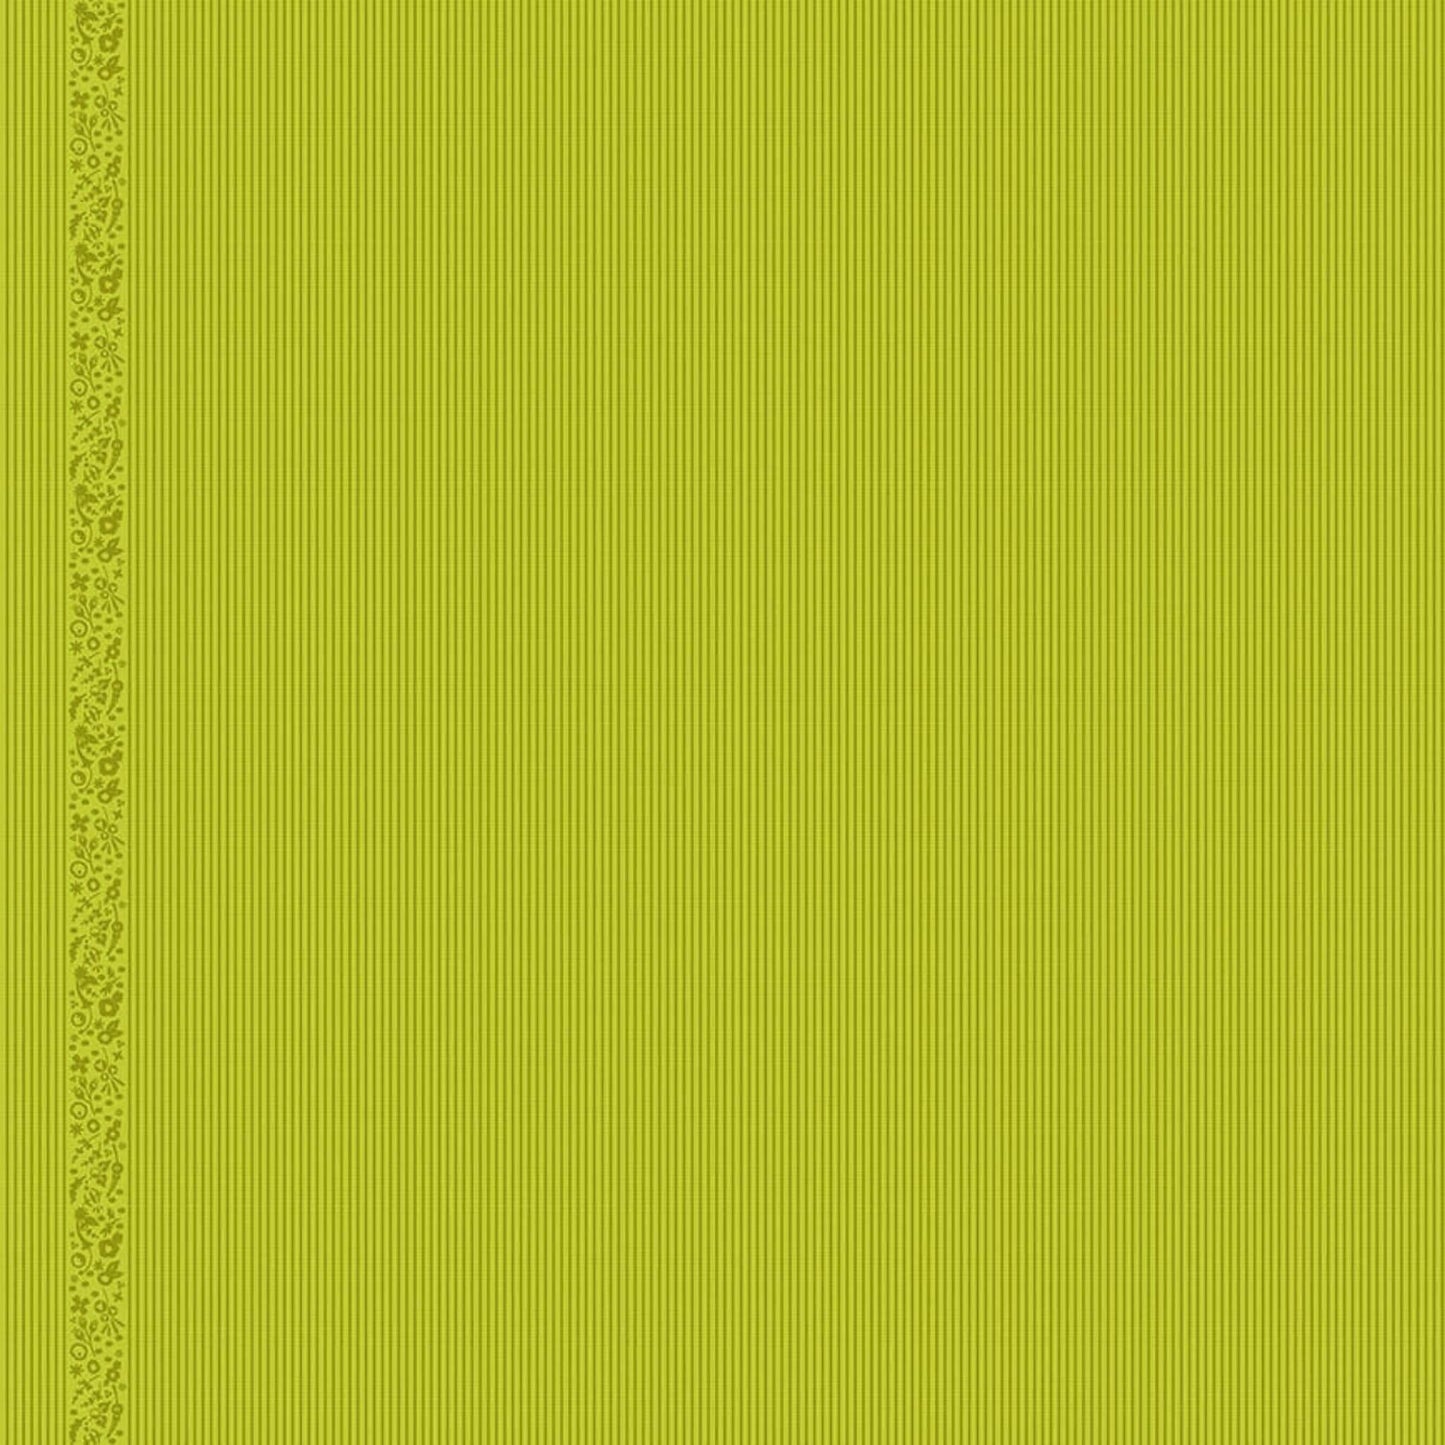 Oval Stripe - Ellipse Fabric Range - Andover - Green